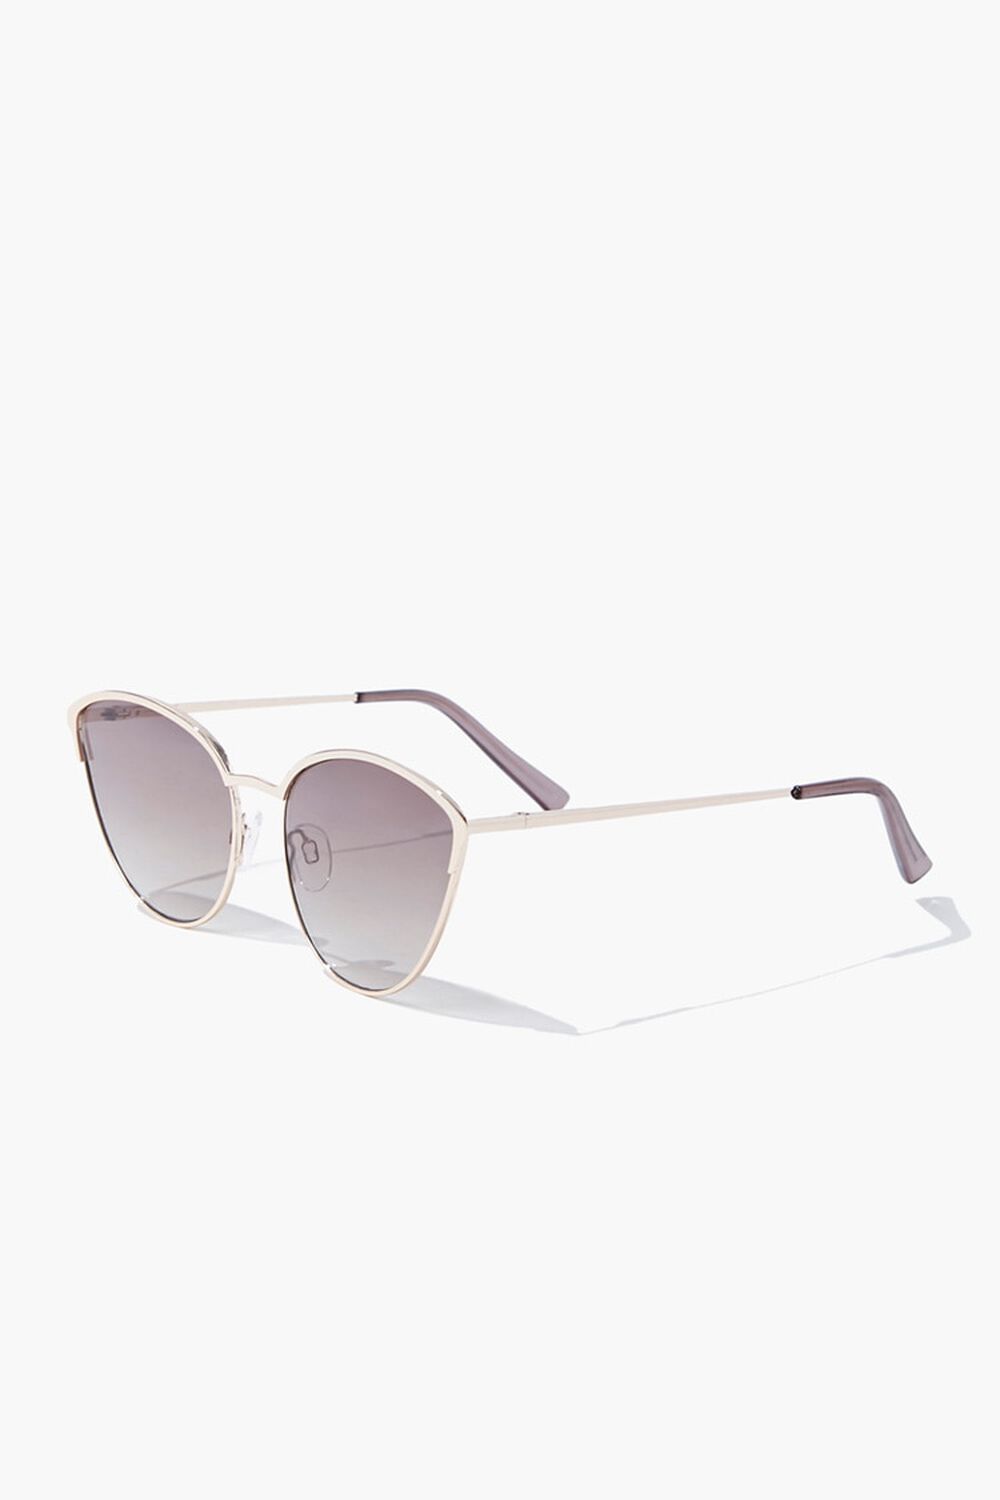 Forever 21 Metallic Trim Cat Eye Sunglasses, $7, Forever 21